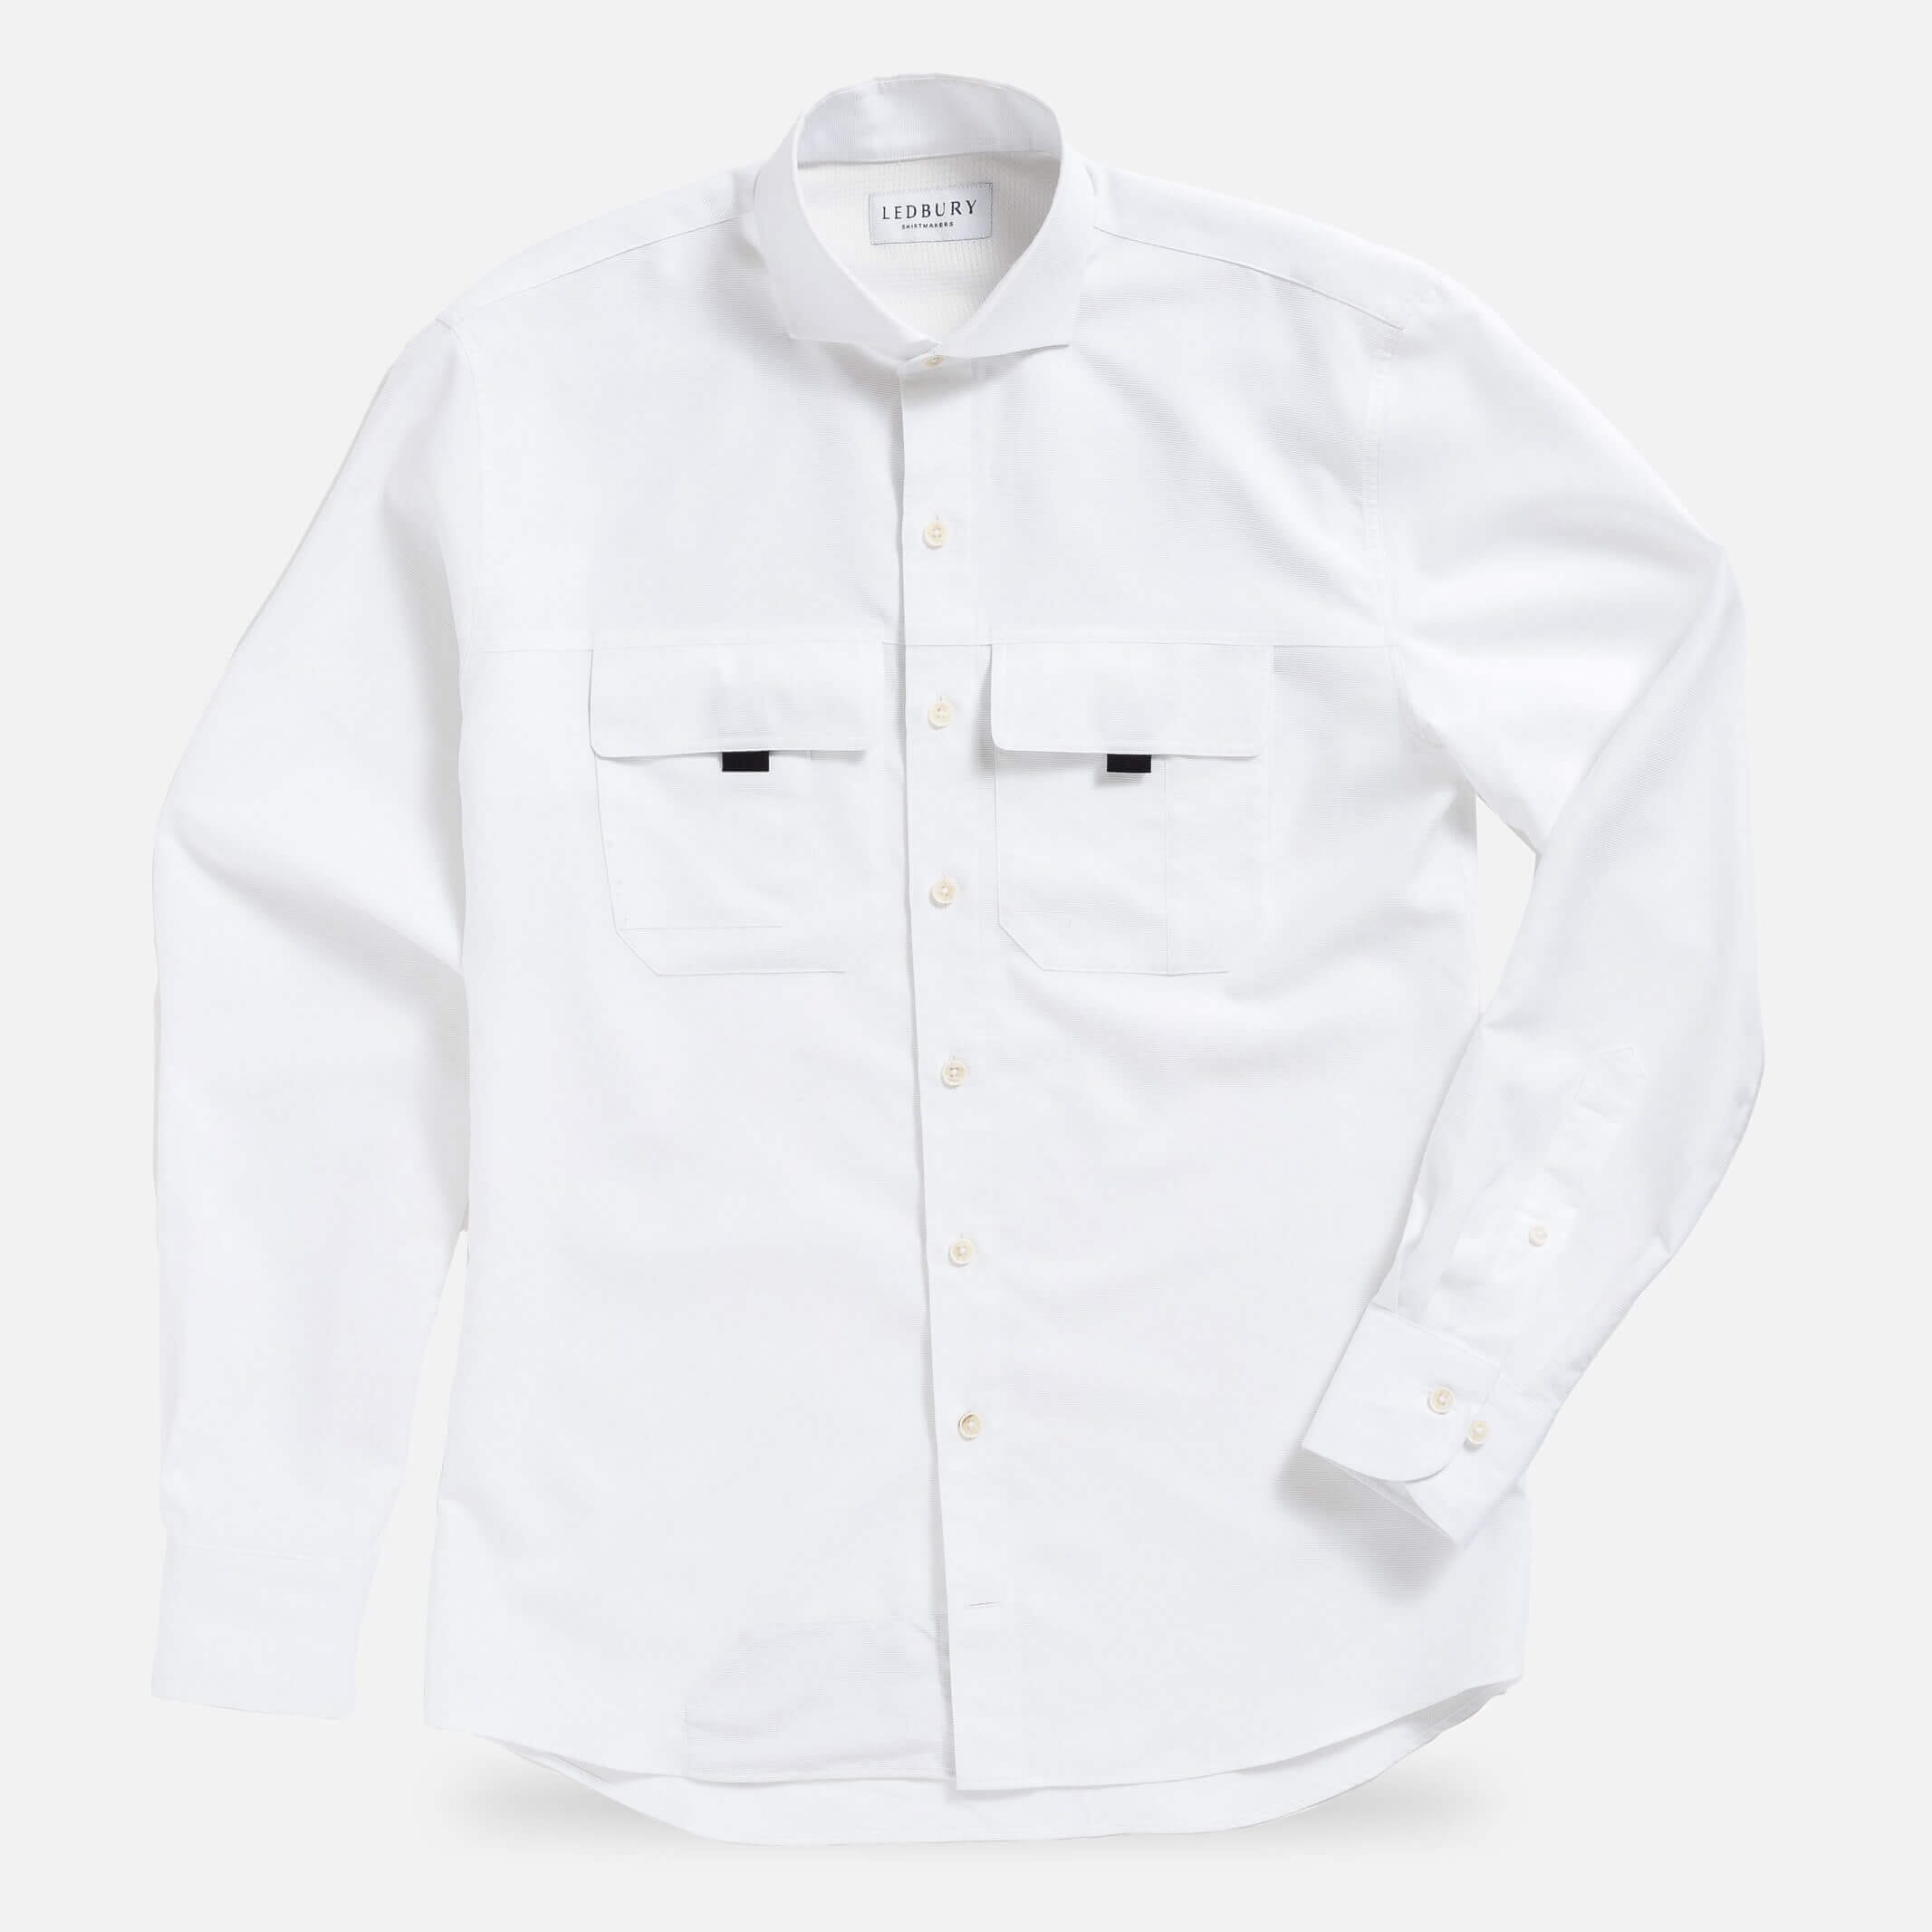 The White Tulu Custom Fishing Shirt